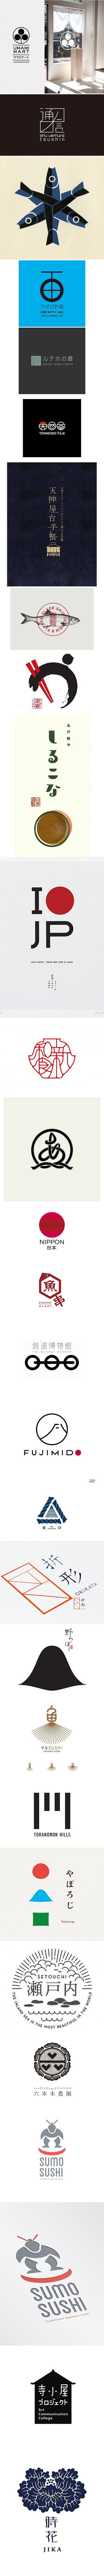 日本 logo设计 - PPLock锁定...